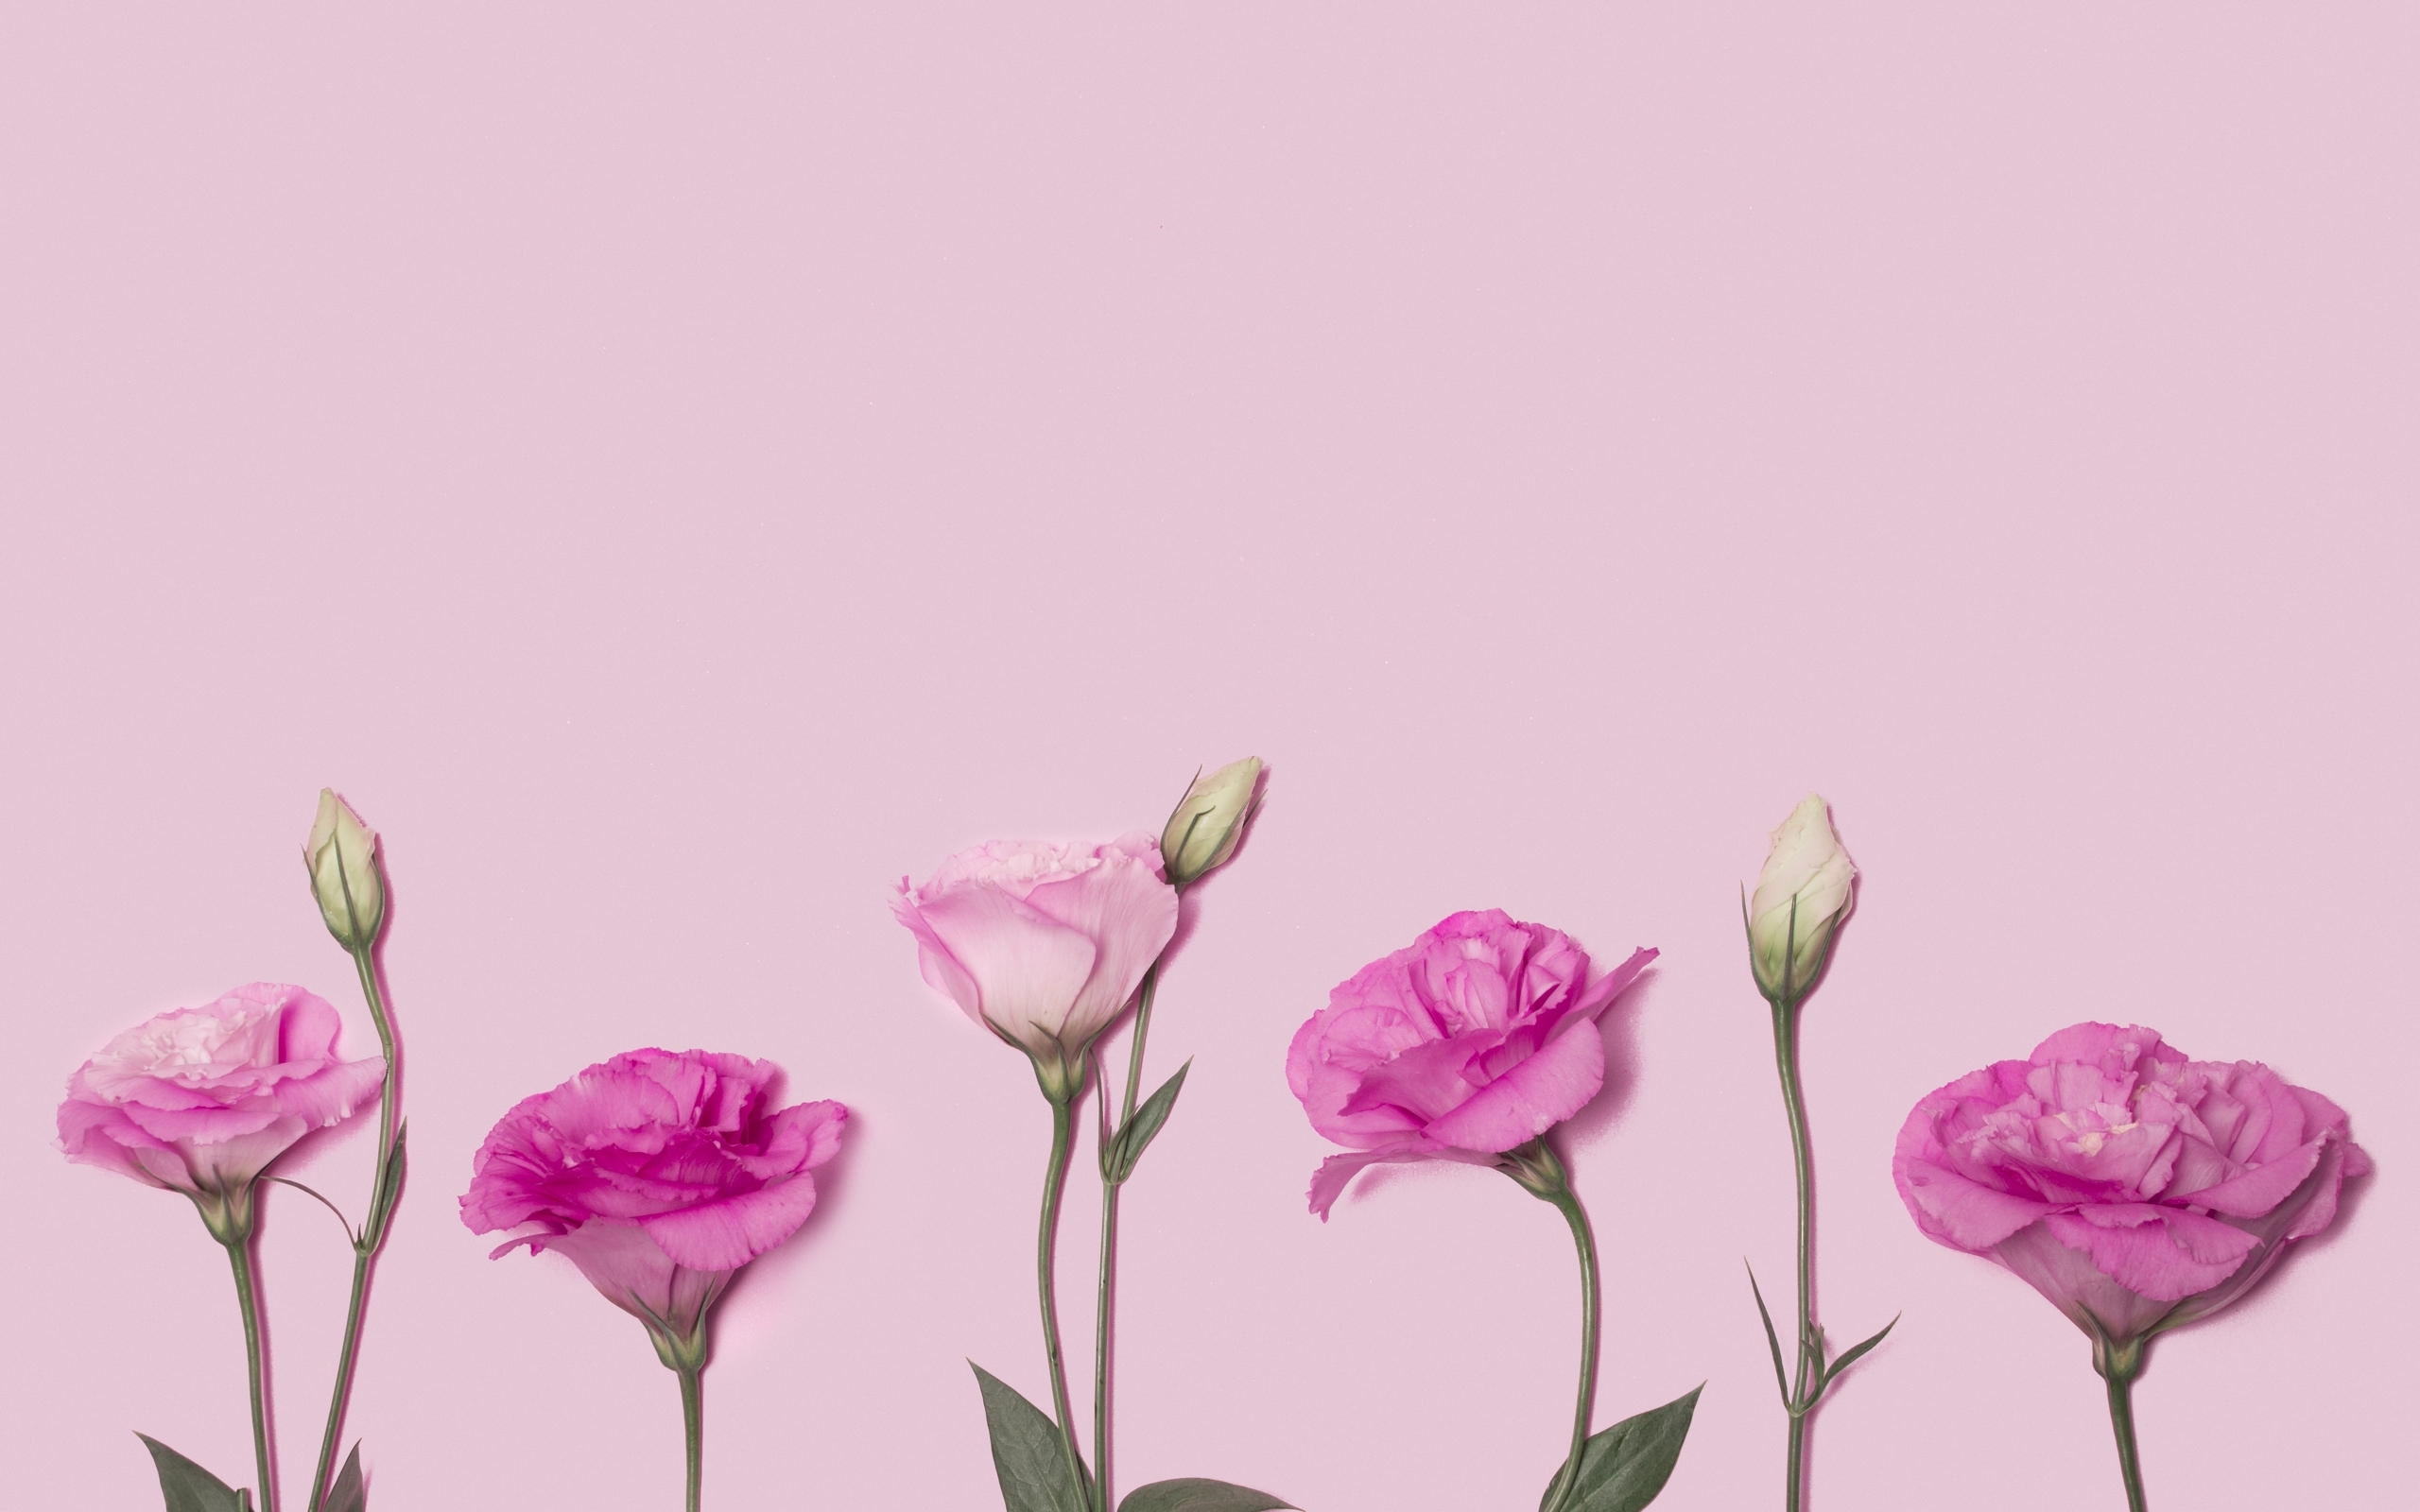 Image: Eustoma, flowers, pink